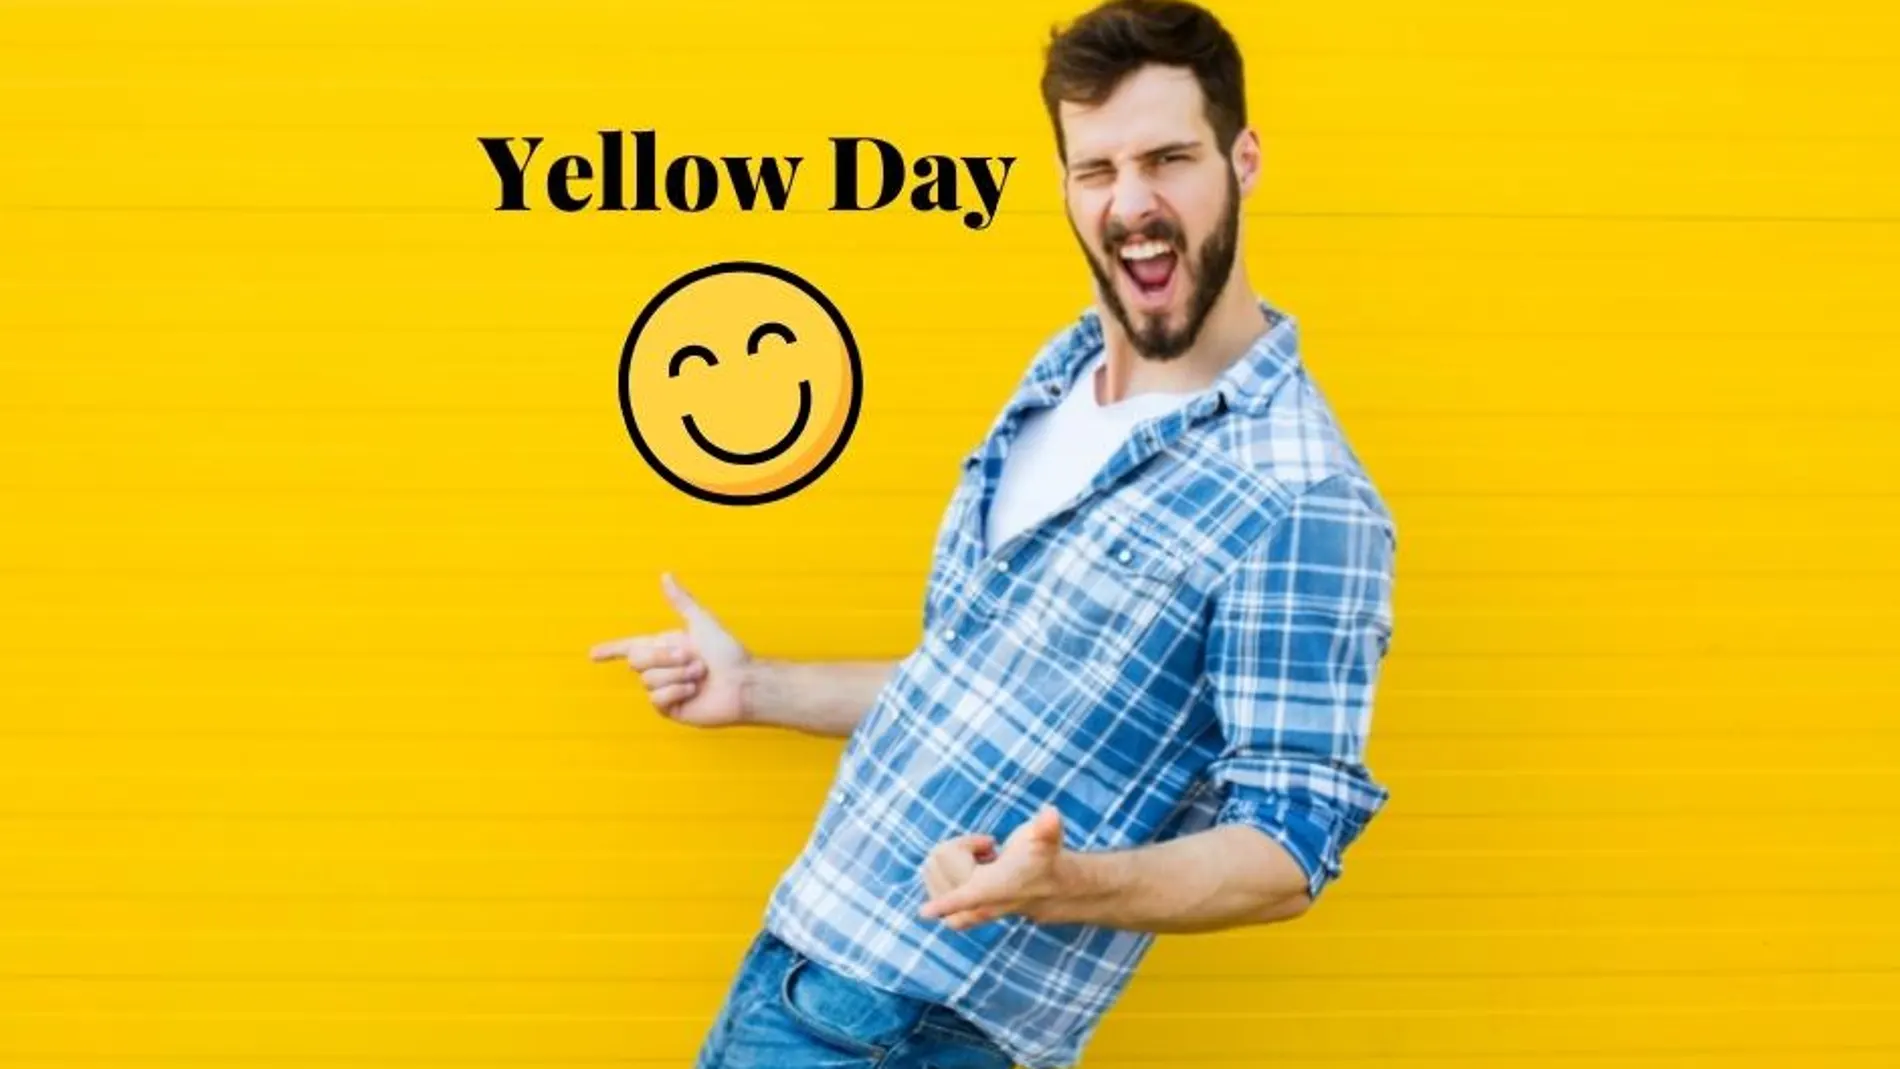 El 20 de junio se celebre el "Yellow Day" o el día más feliz del año